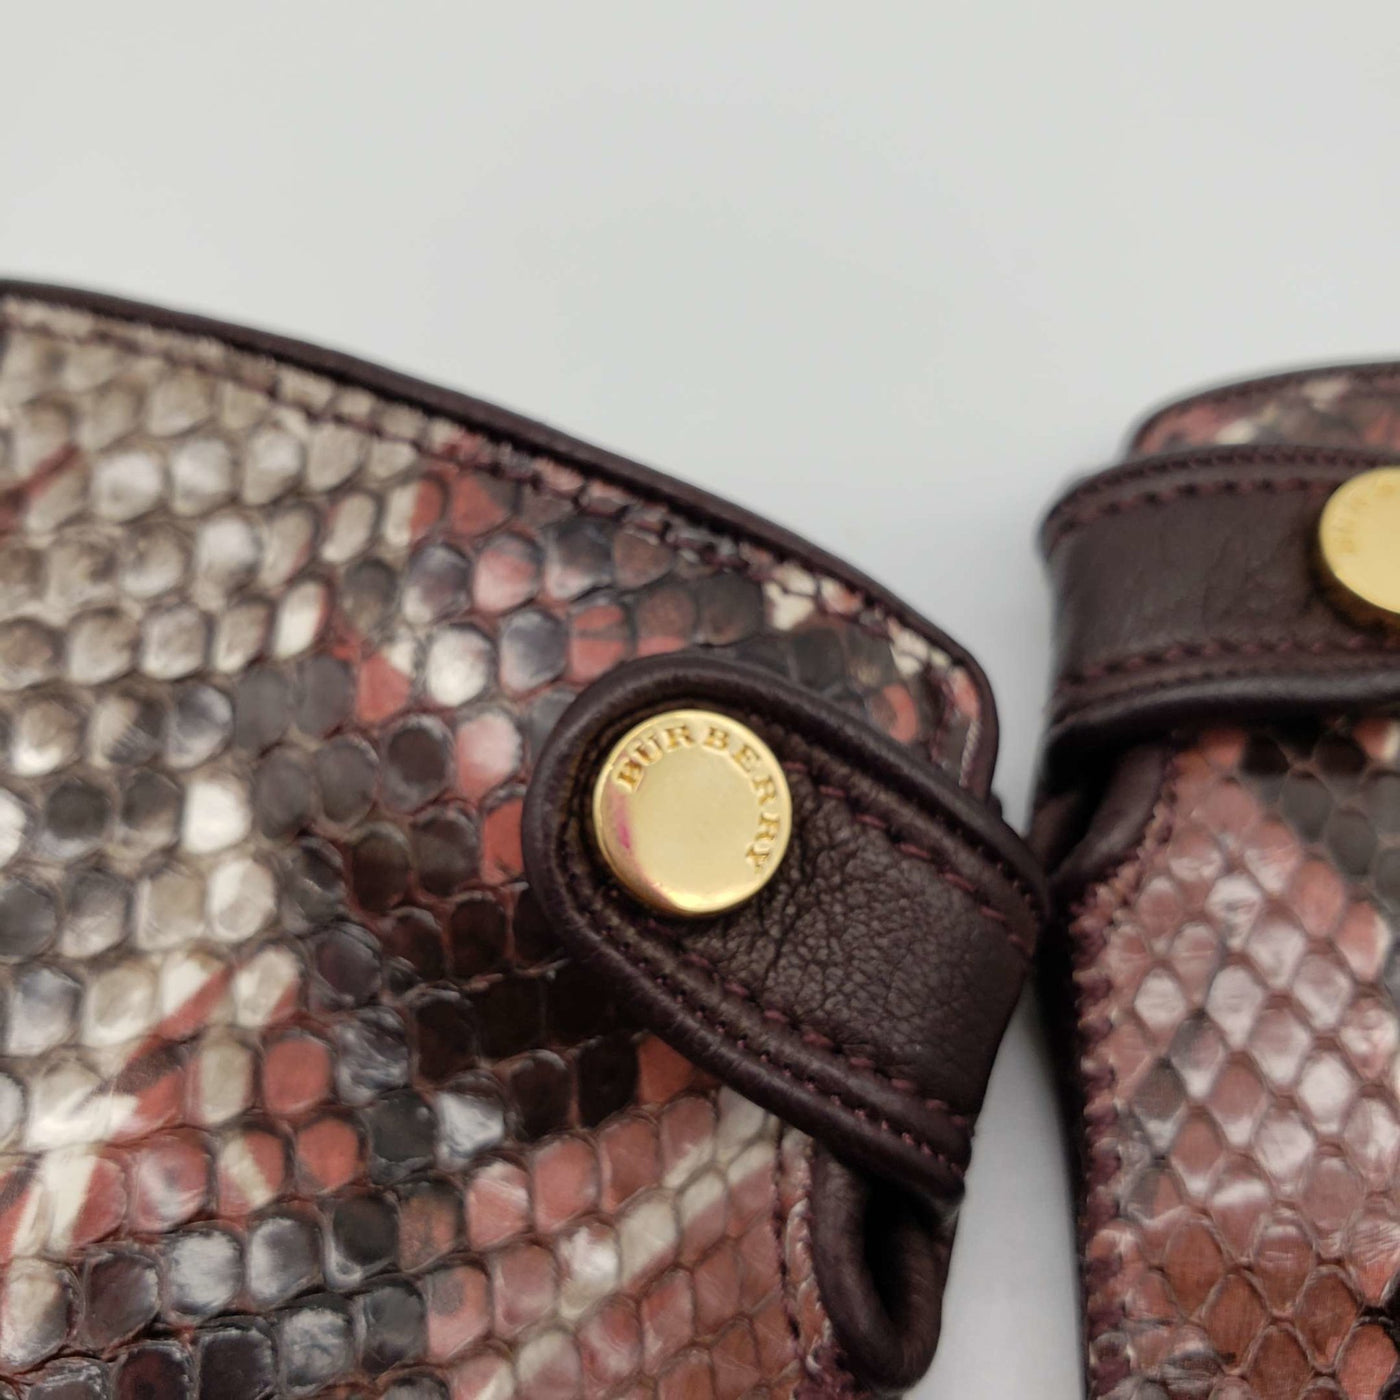 BURBERRY Snakeskin Brown Lamnskin Leather Gloves - Luxury Cheaper